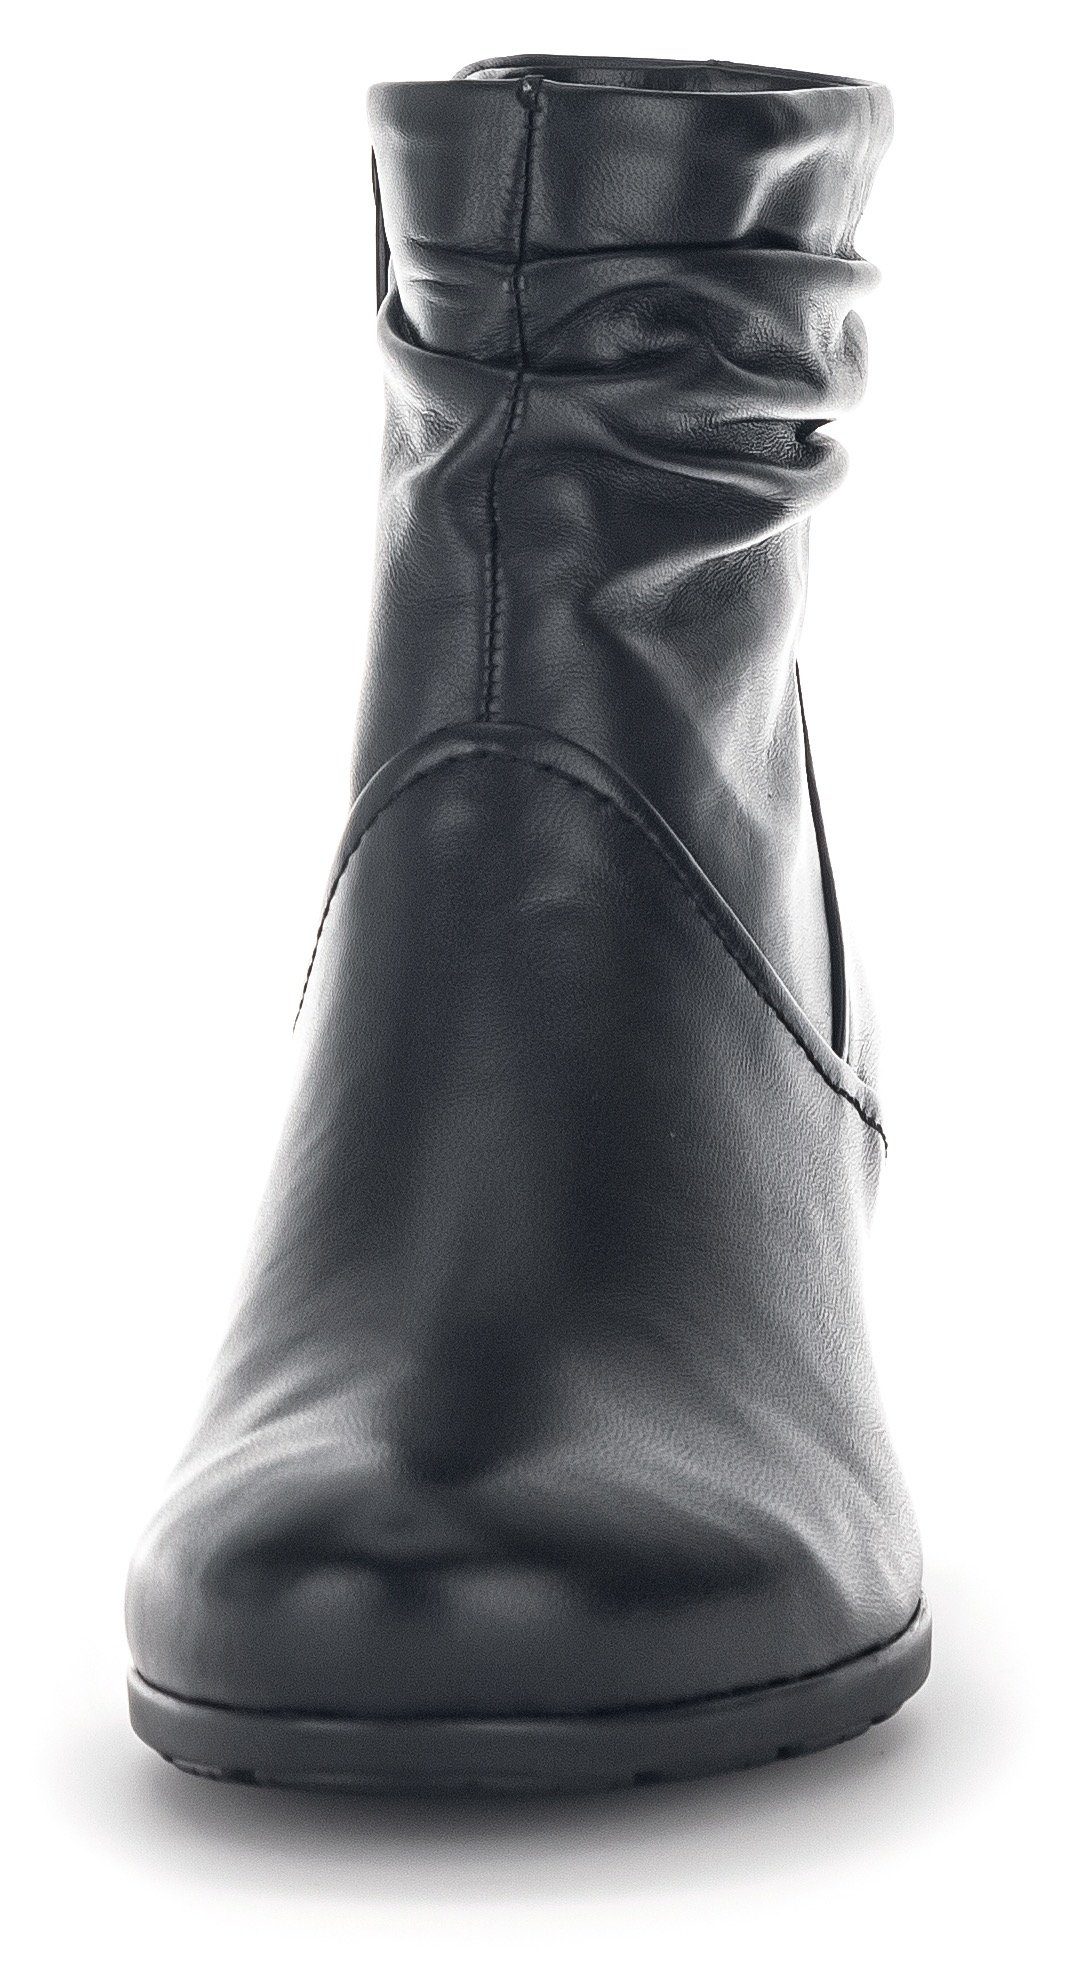 Gabor Stiefelette mit Fitting-Ausstattung Best schwarz